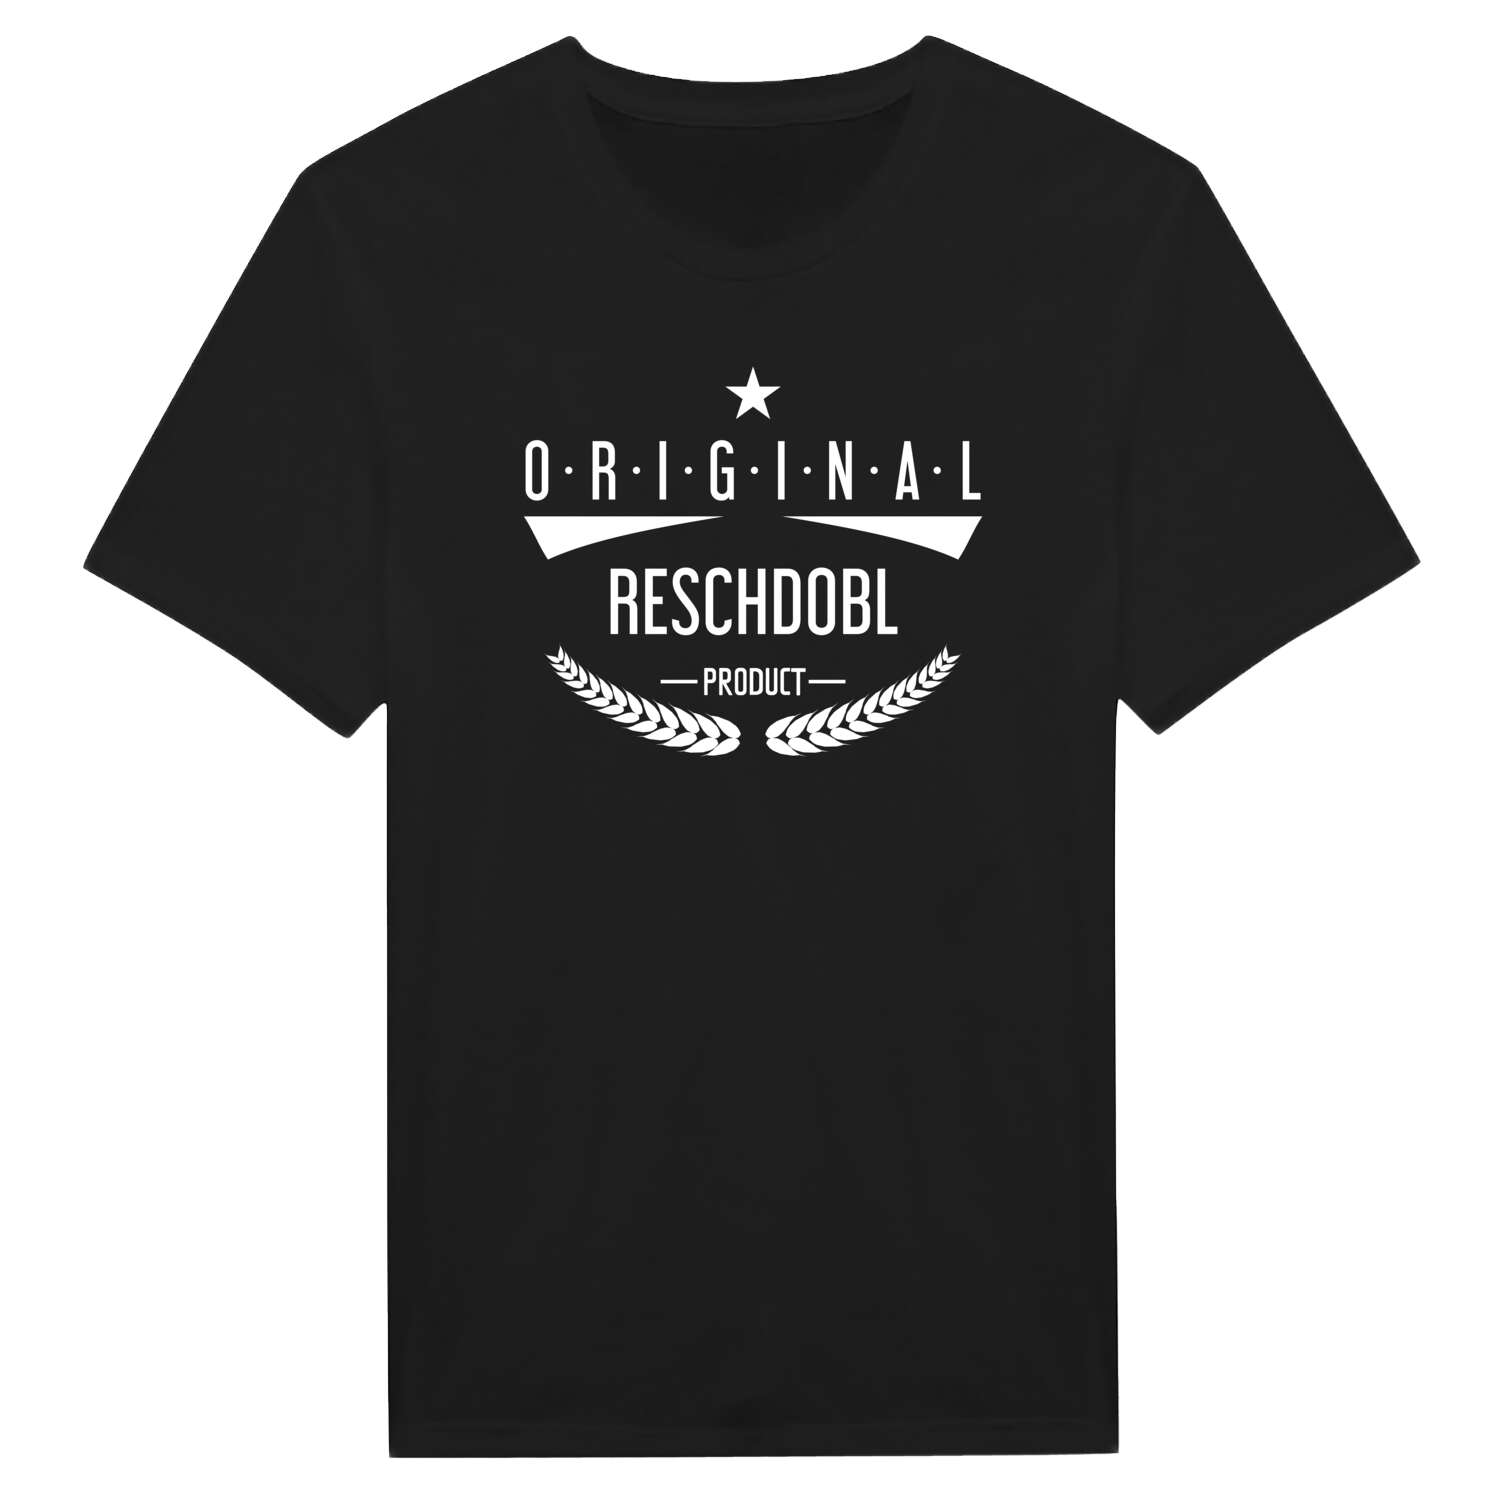 Reschdobl T-Shirt »Original Product«